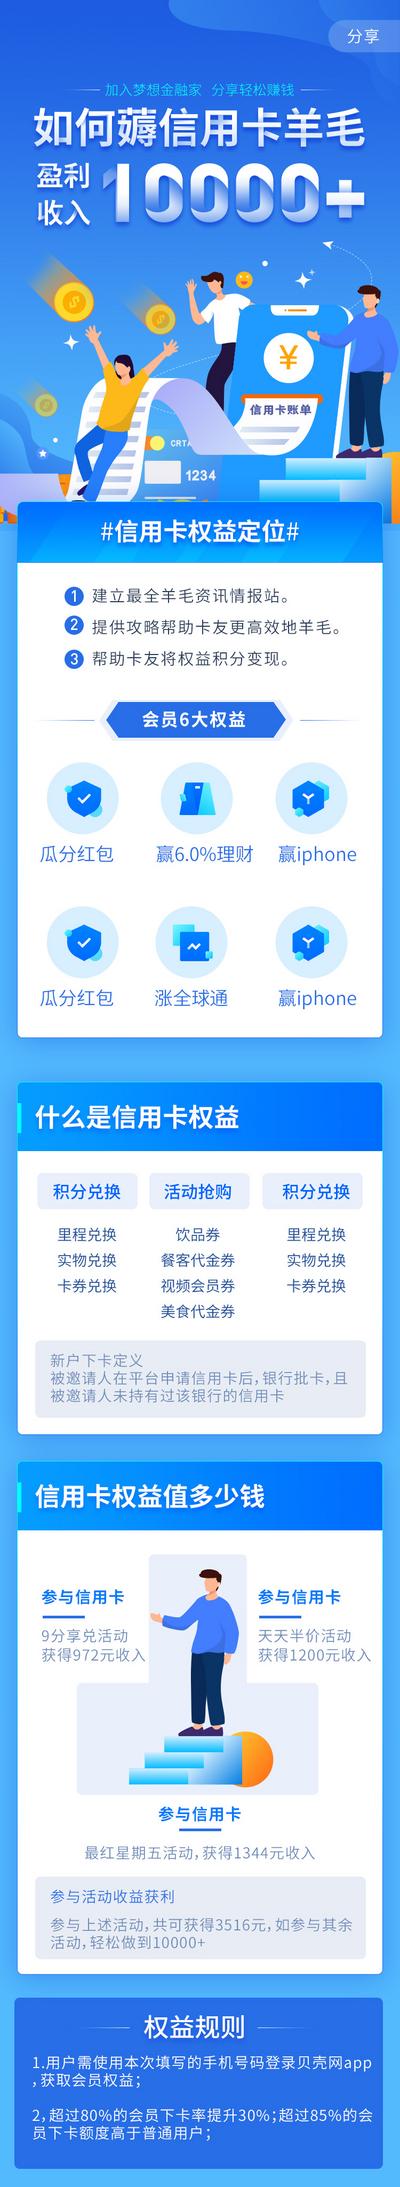 南门网 广告 海报 银行 投资 理财 app 信用卡 H5 专题